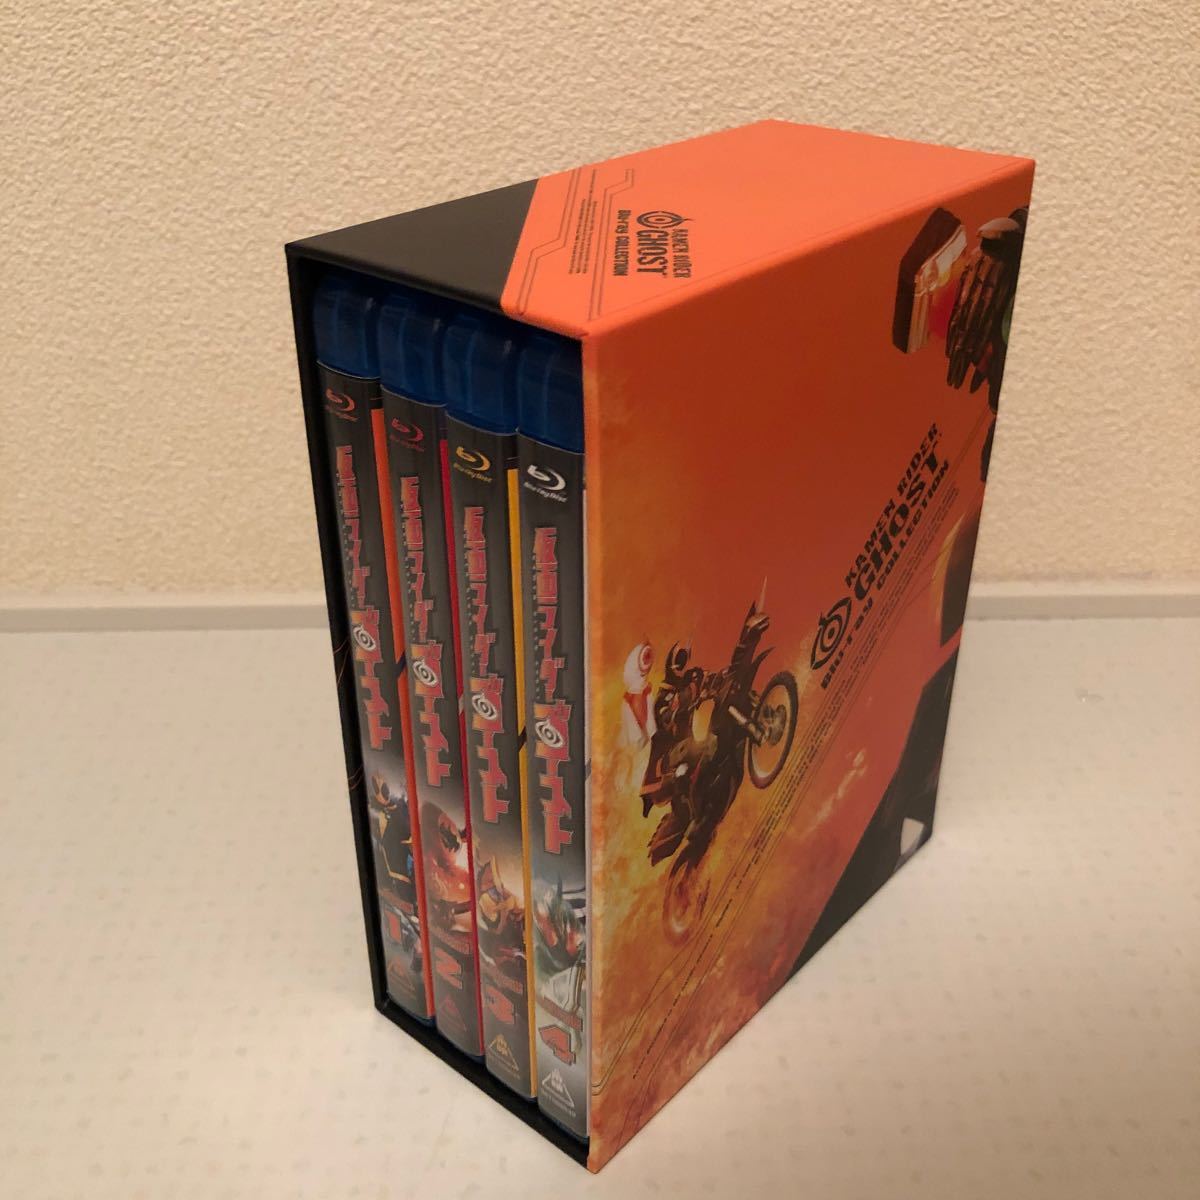 仮面ライダーゴースト ブルーレイ コレクション 全巻セット 収納BOX付き blu-ray